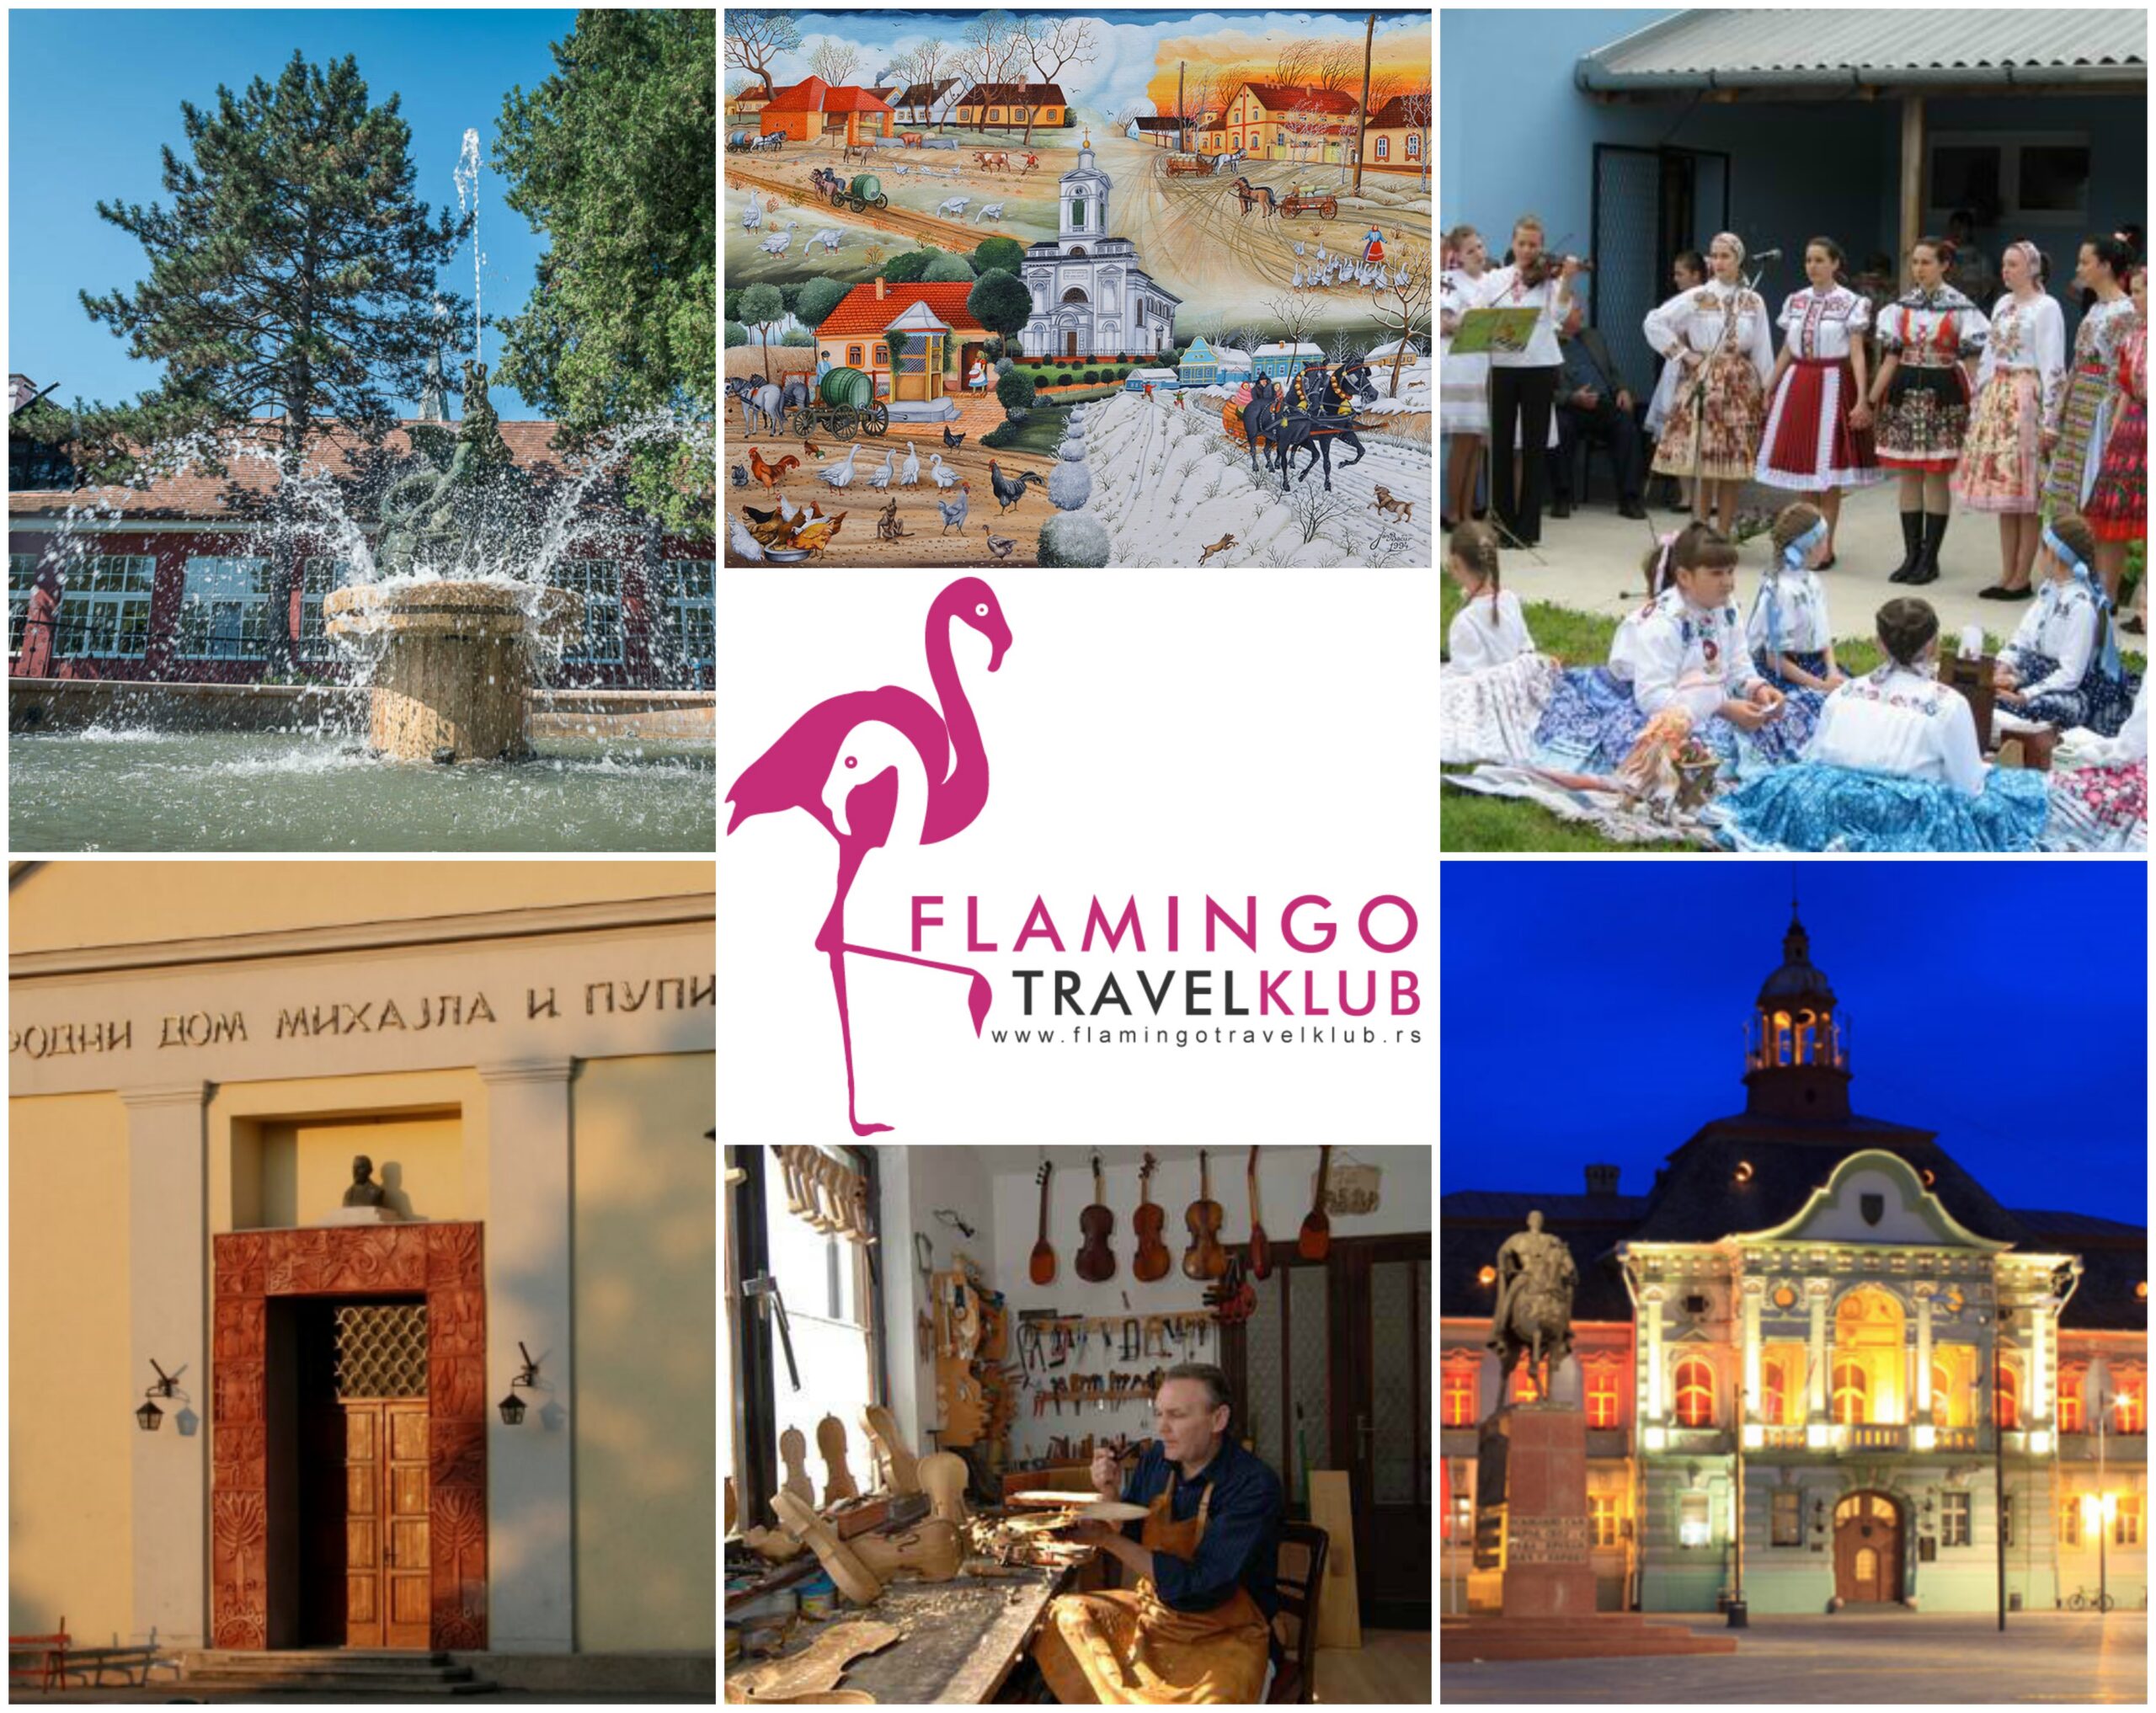 flamingo travel klub facebook